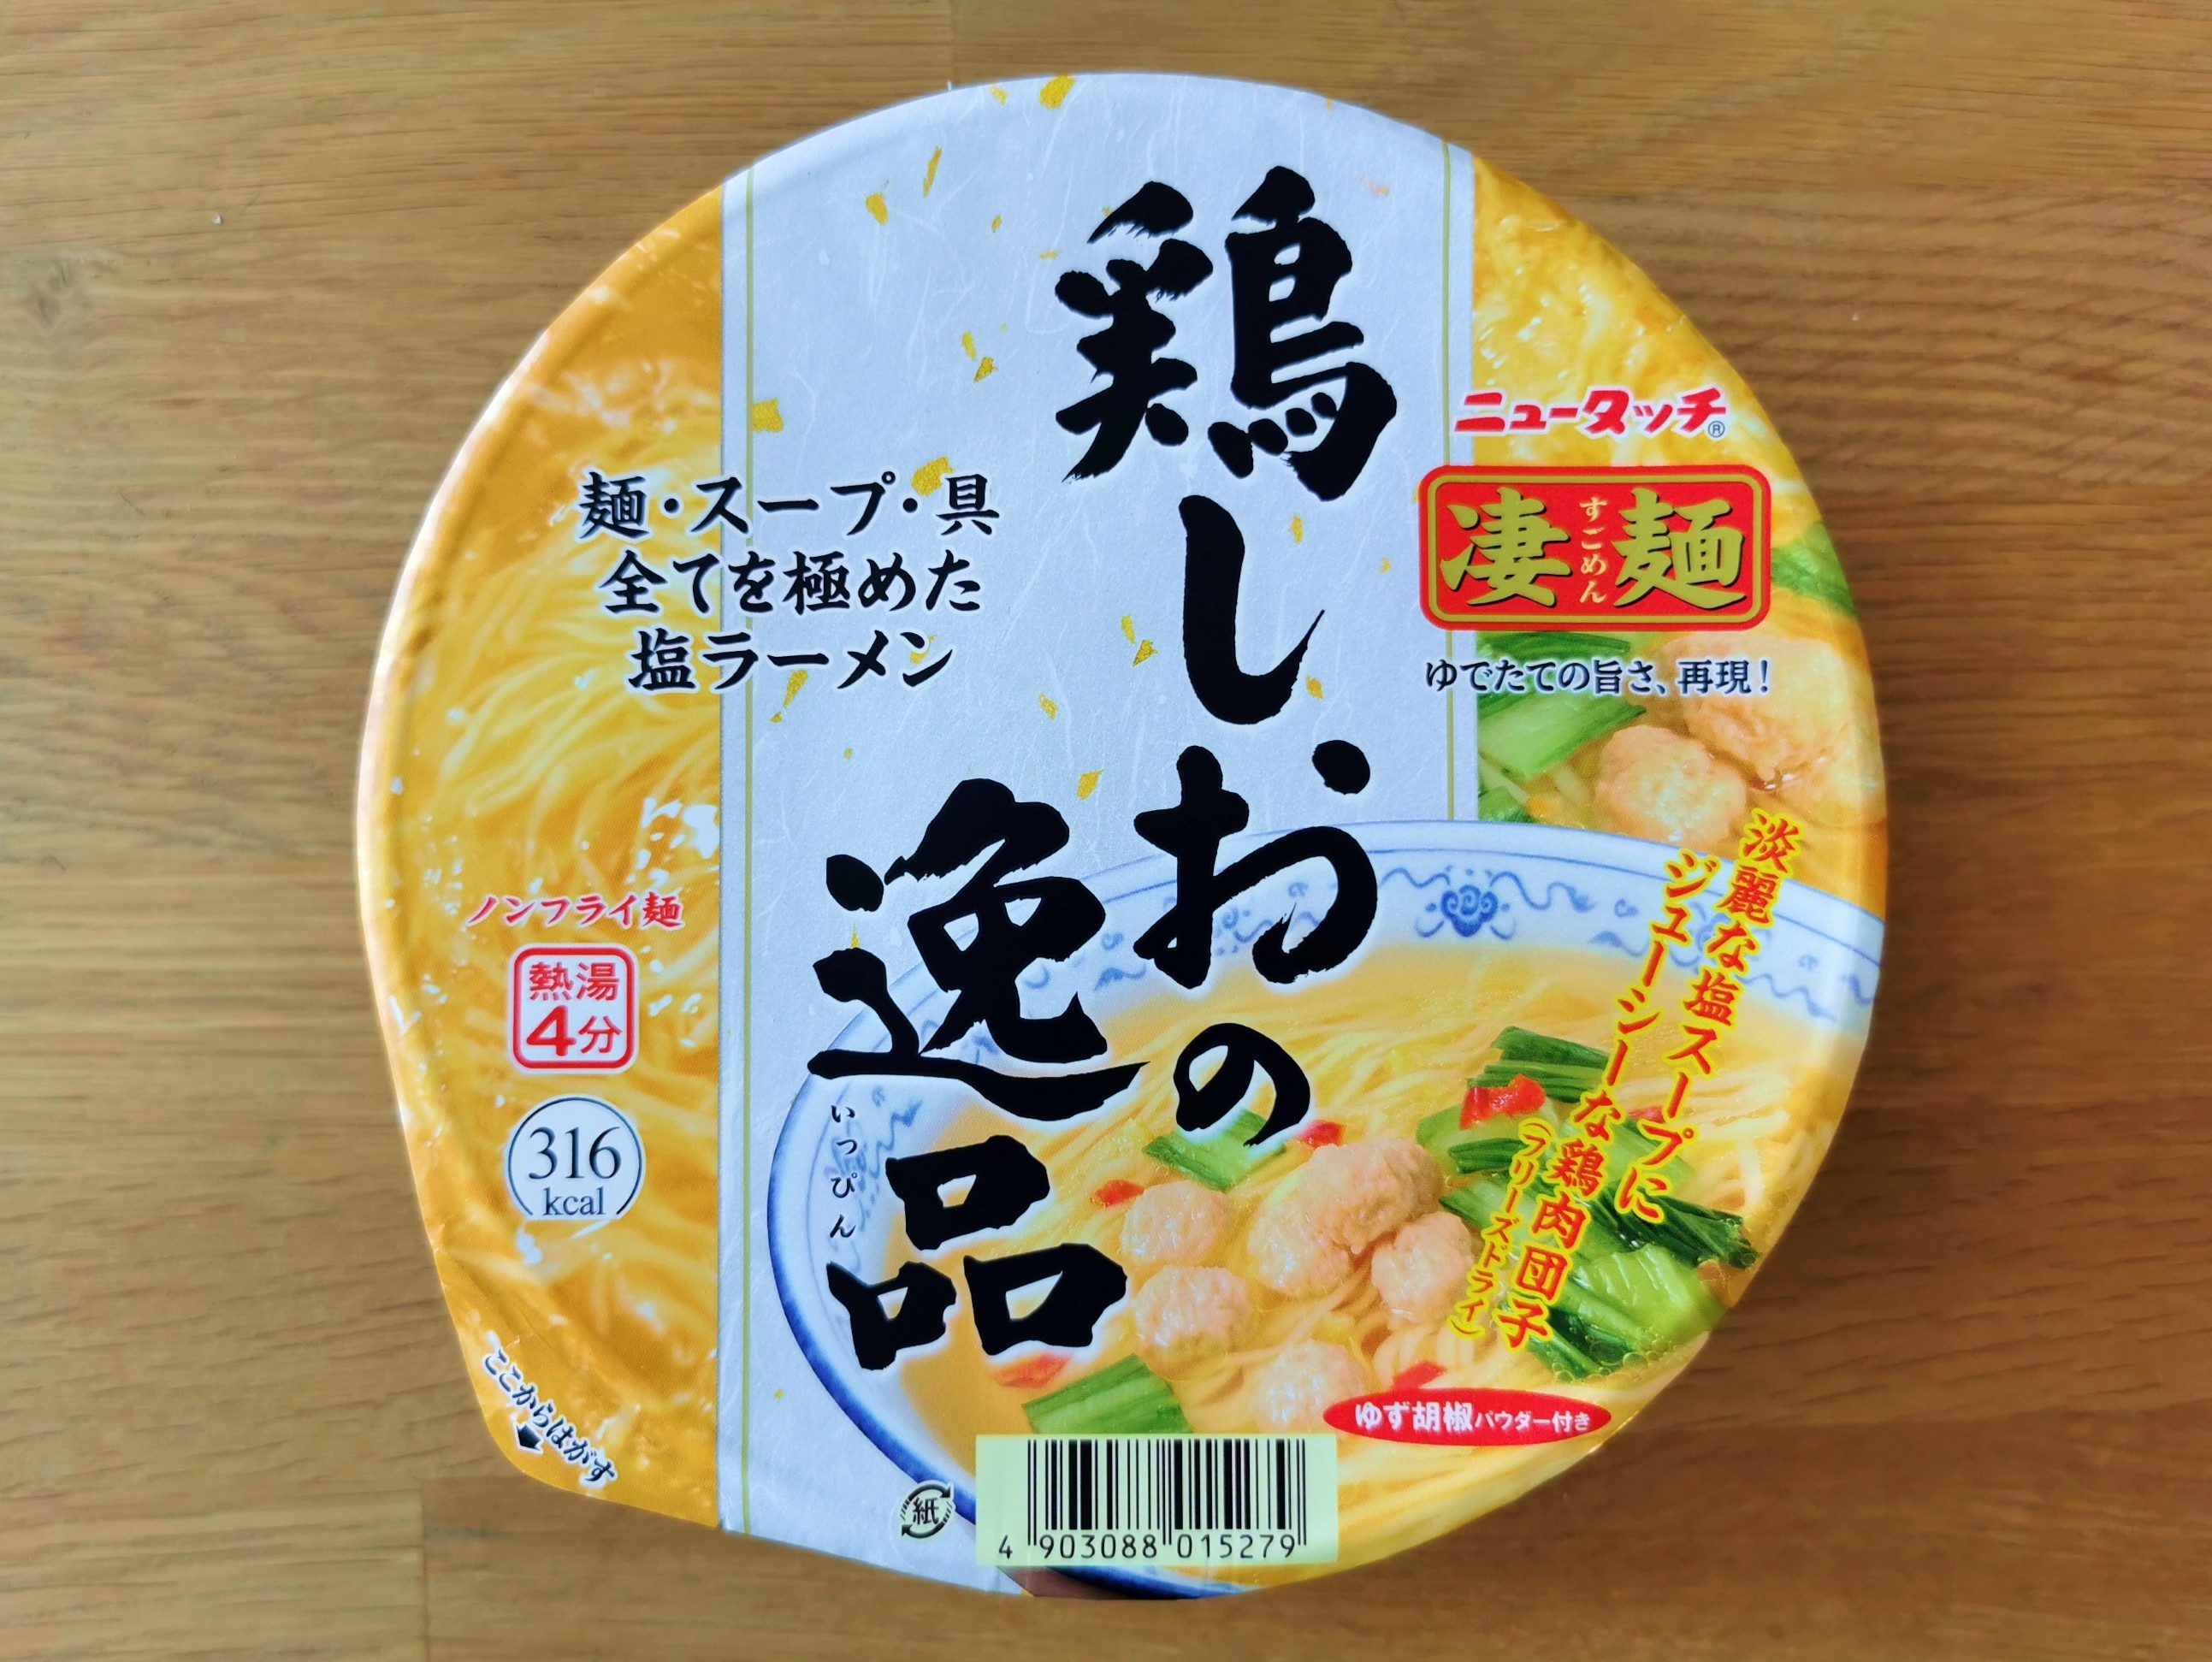 #2257: New Touch "Chicken Shio Ramen"